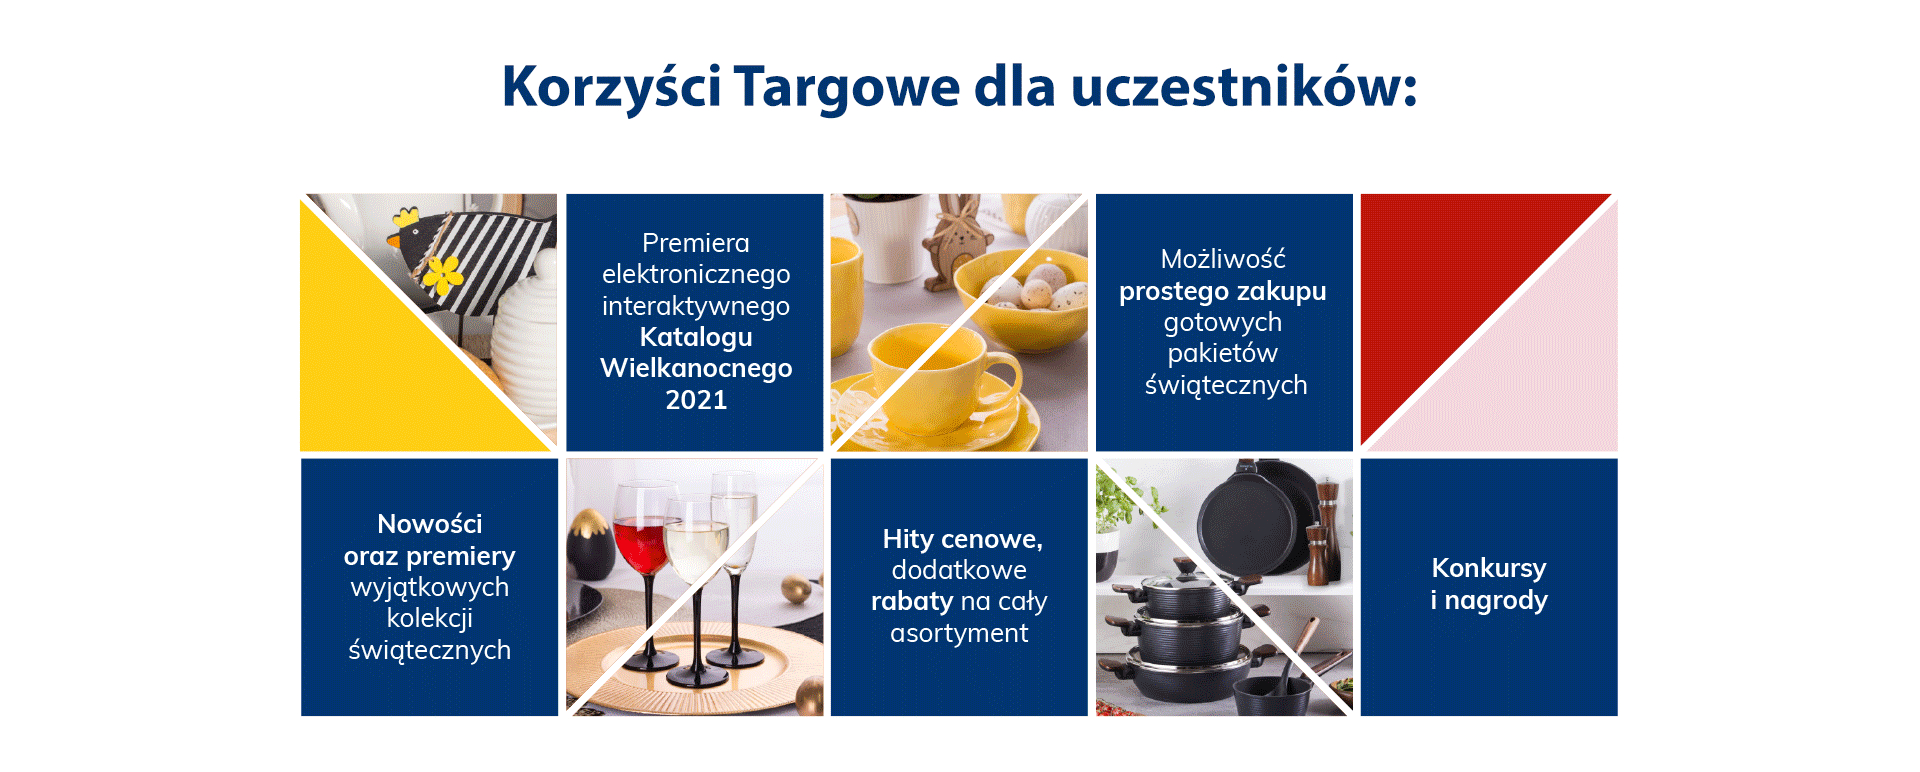 korzysci_targowe_new